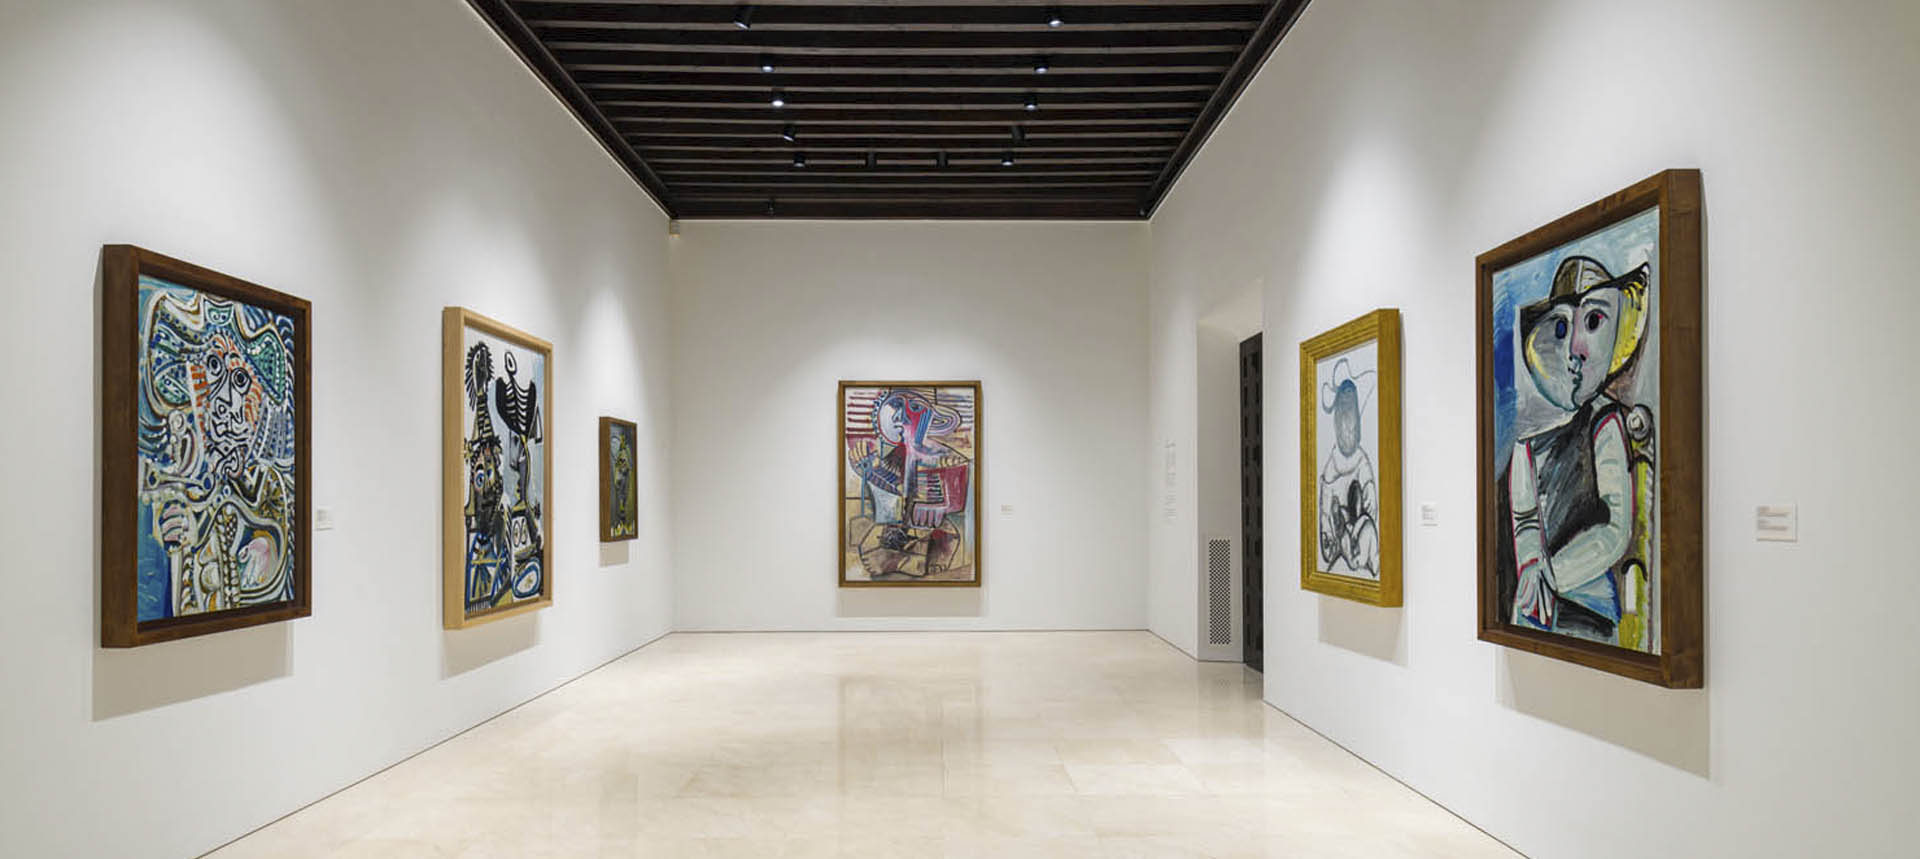 Colección del Museo Picasso Málaga. Sala XI.